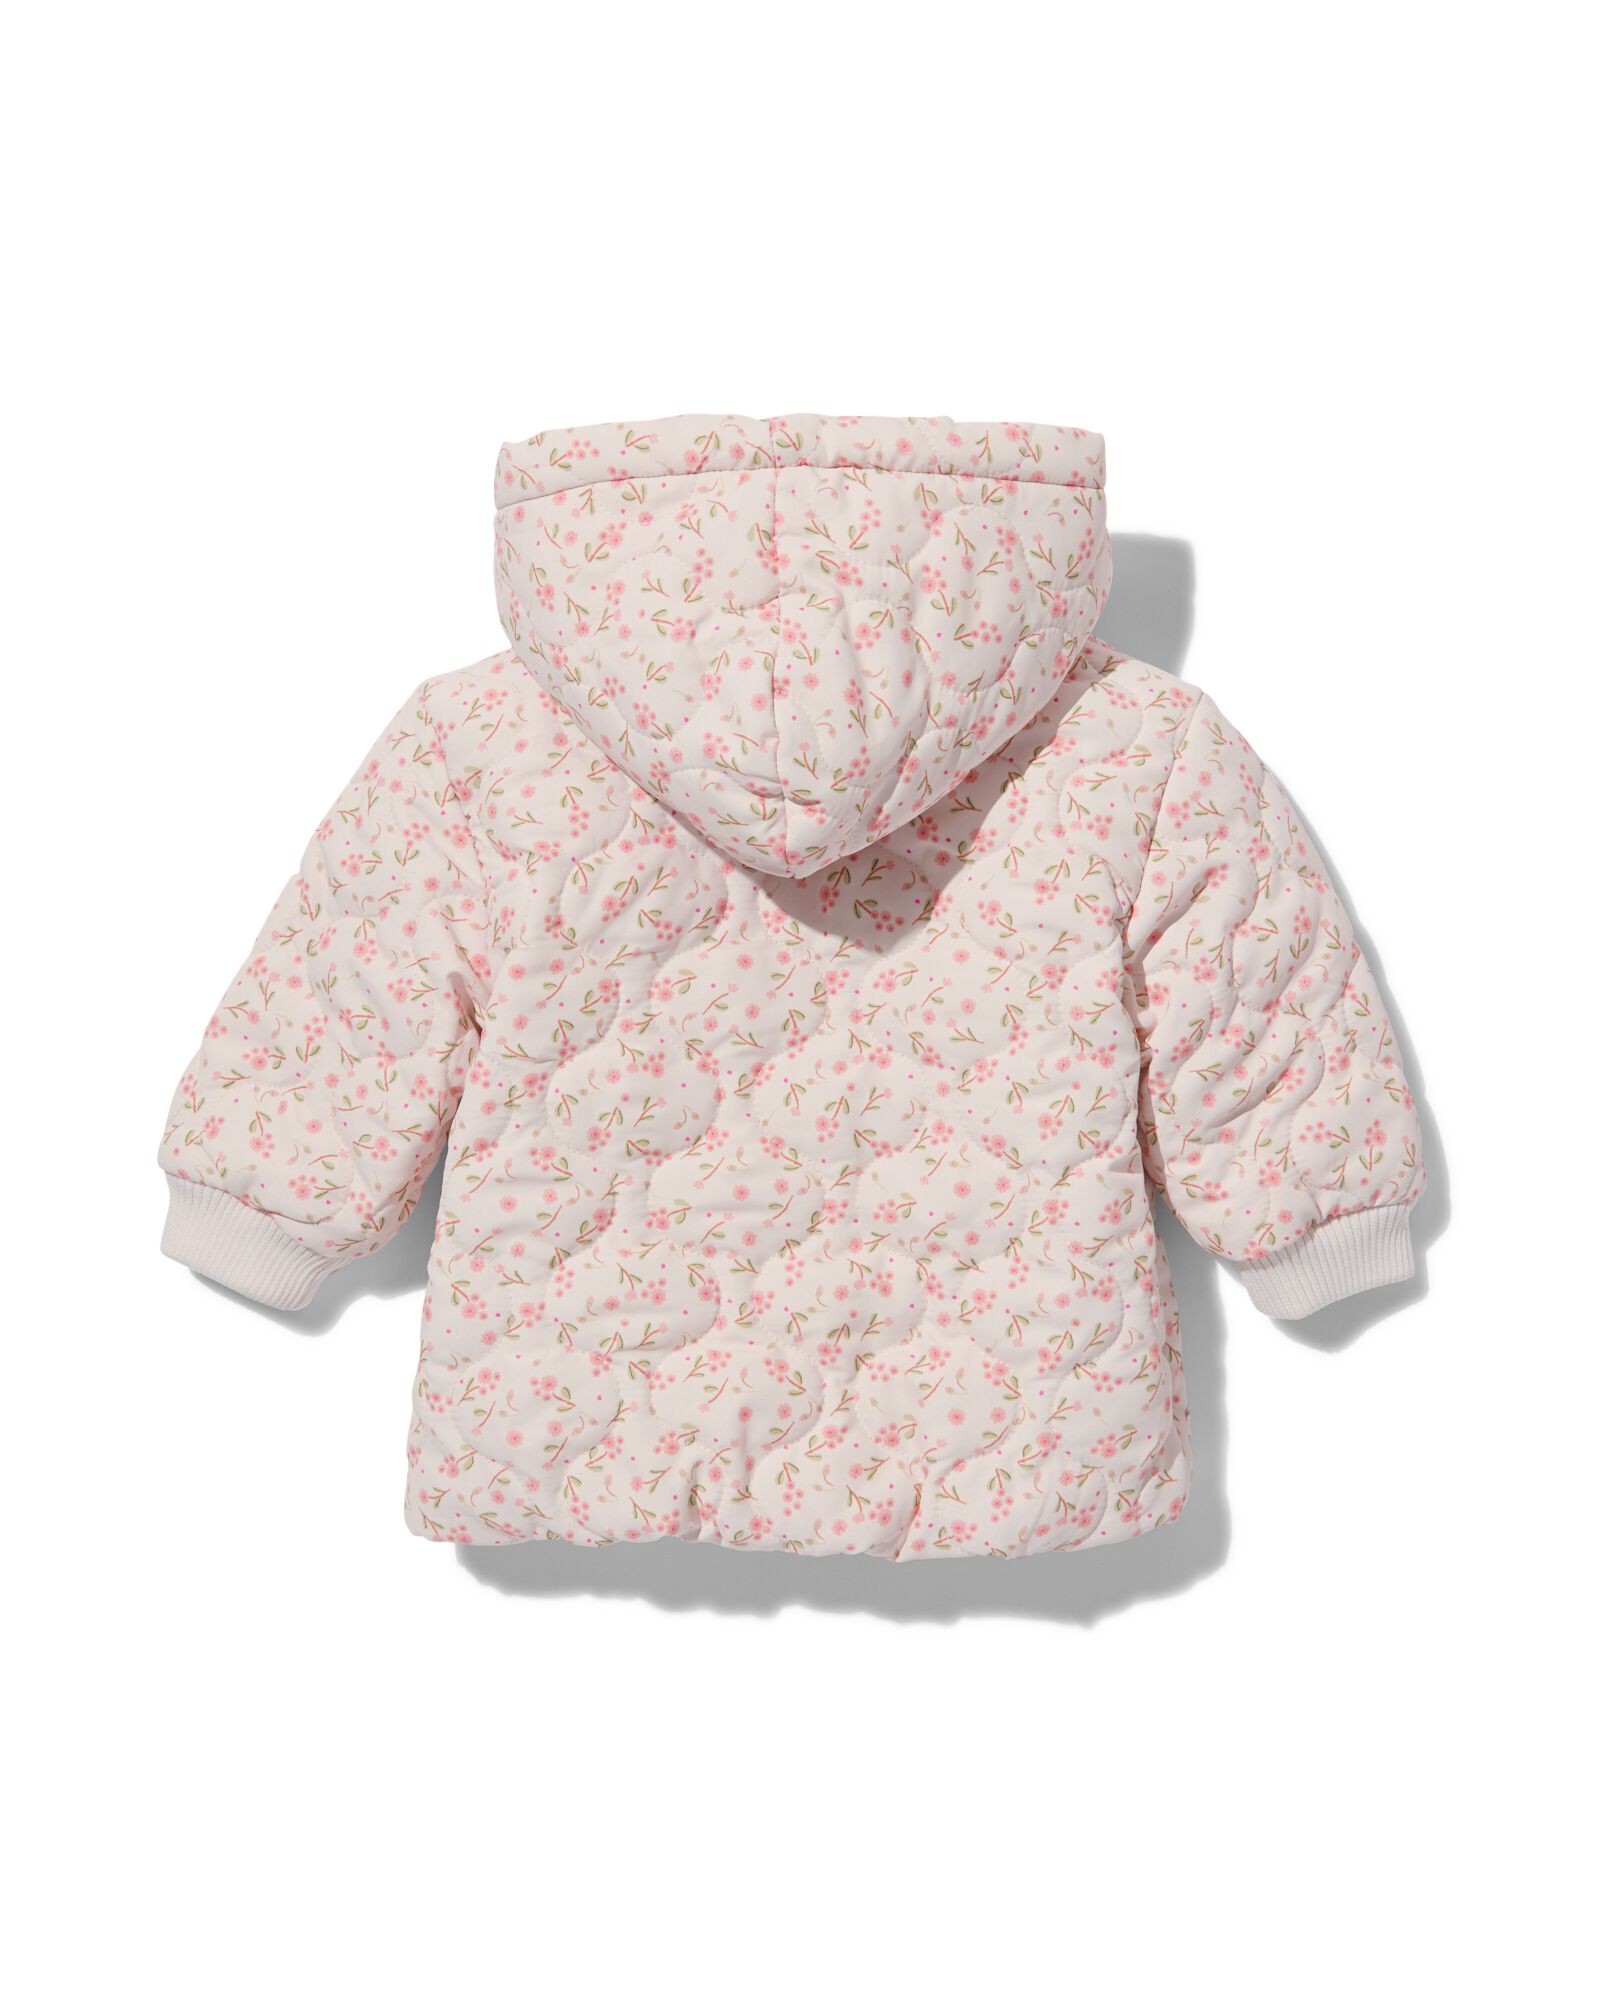 manteau matelassé bébé avec capuche fleurs écru écru - 1000032016 - HEMA